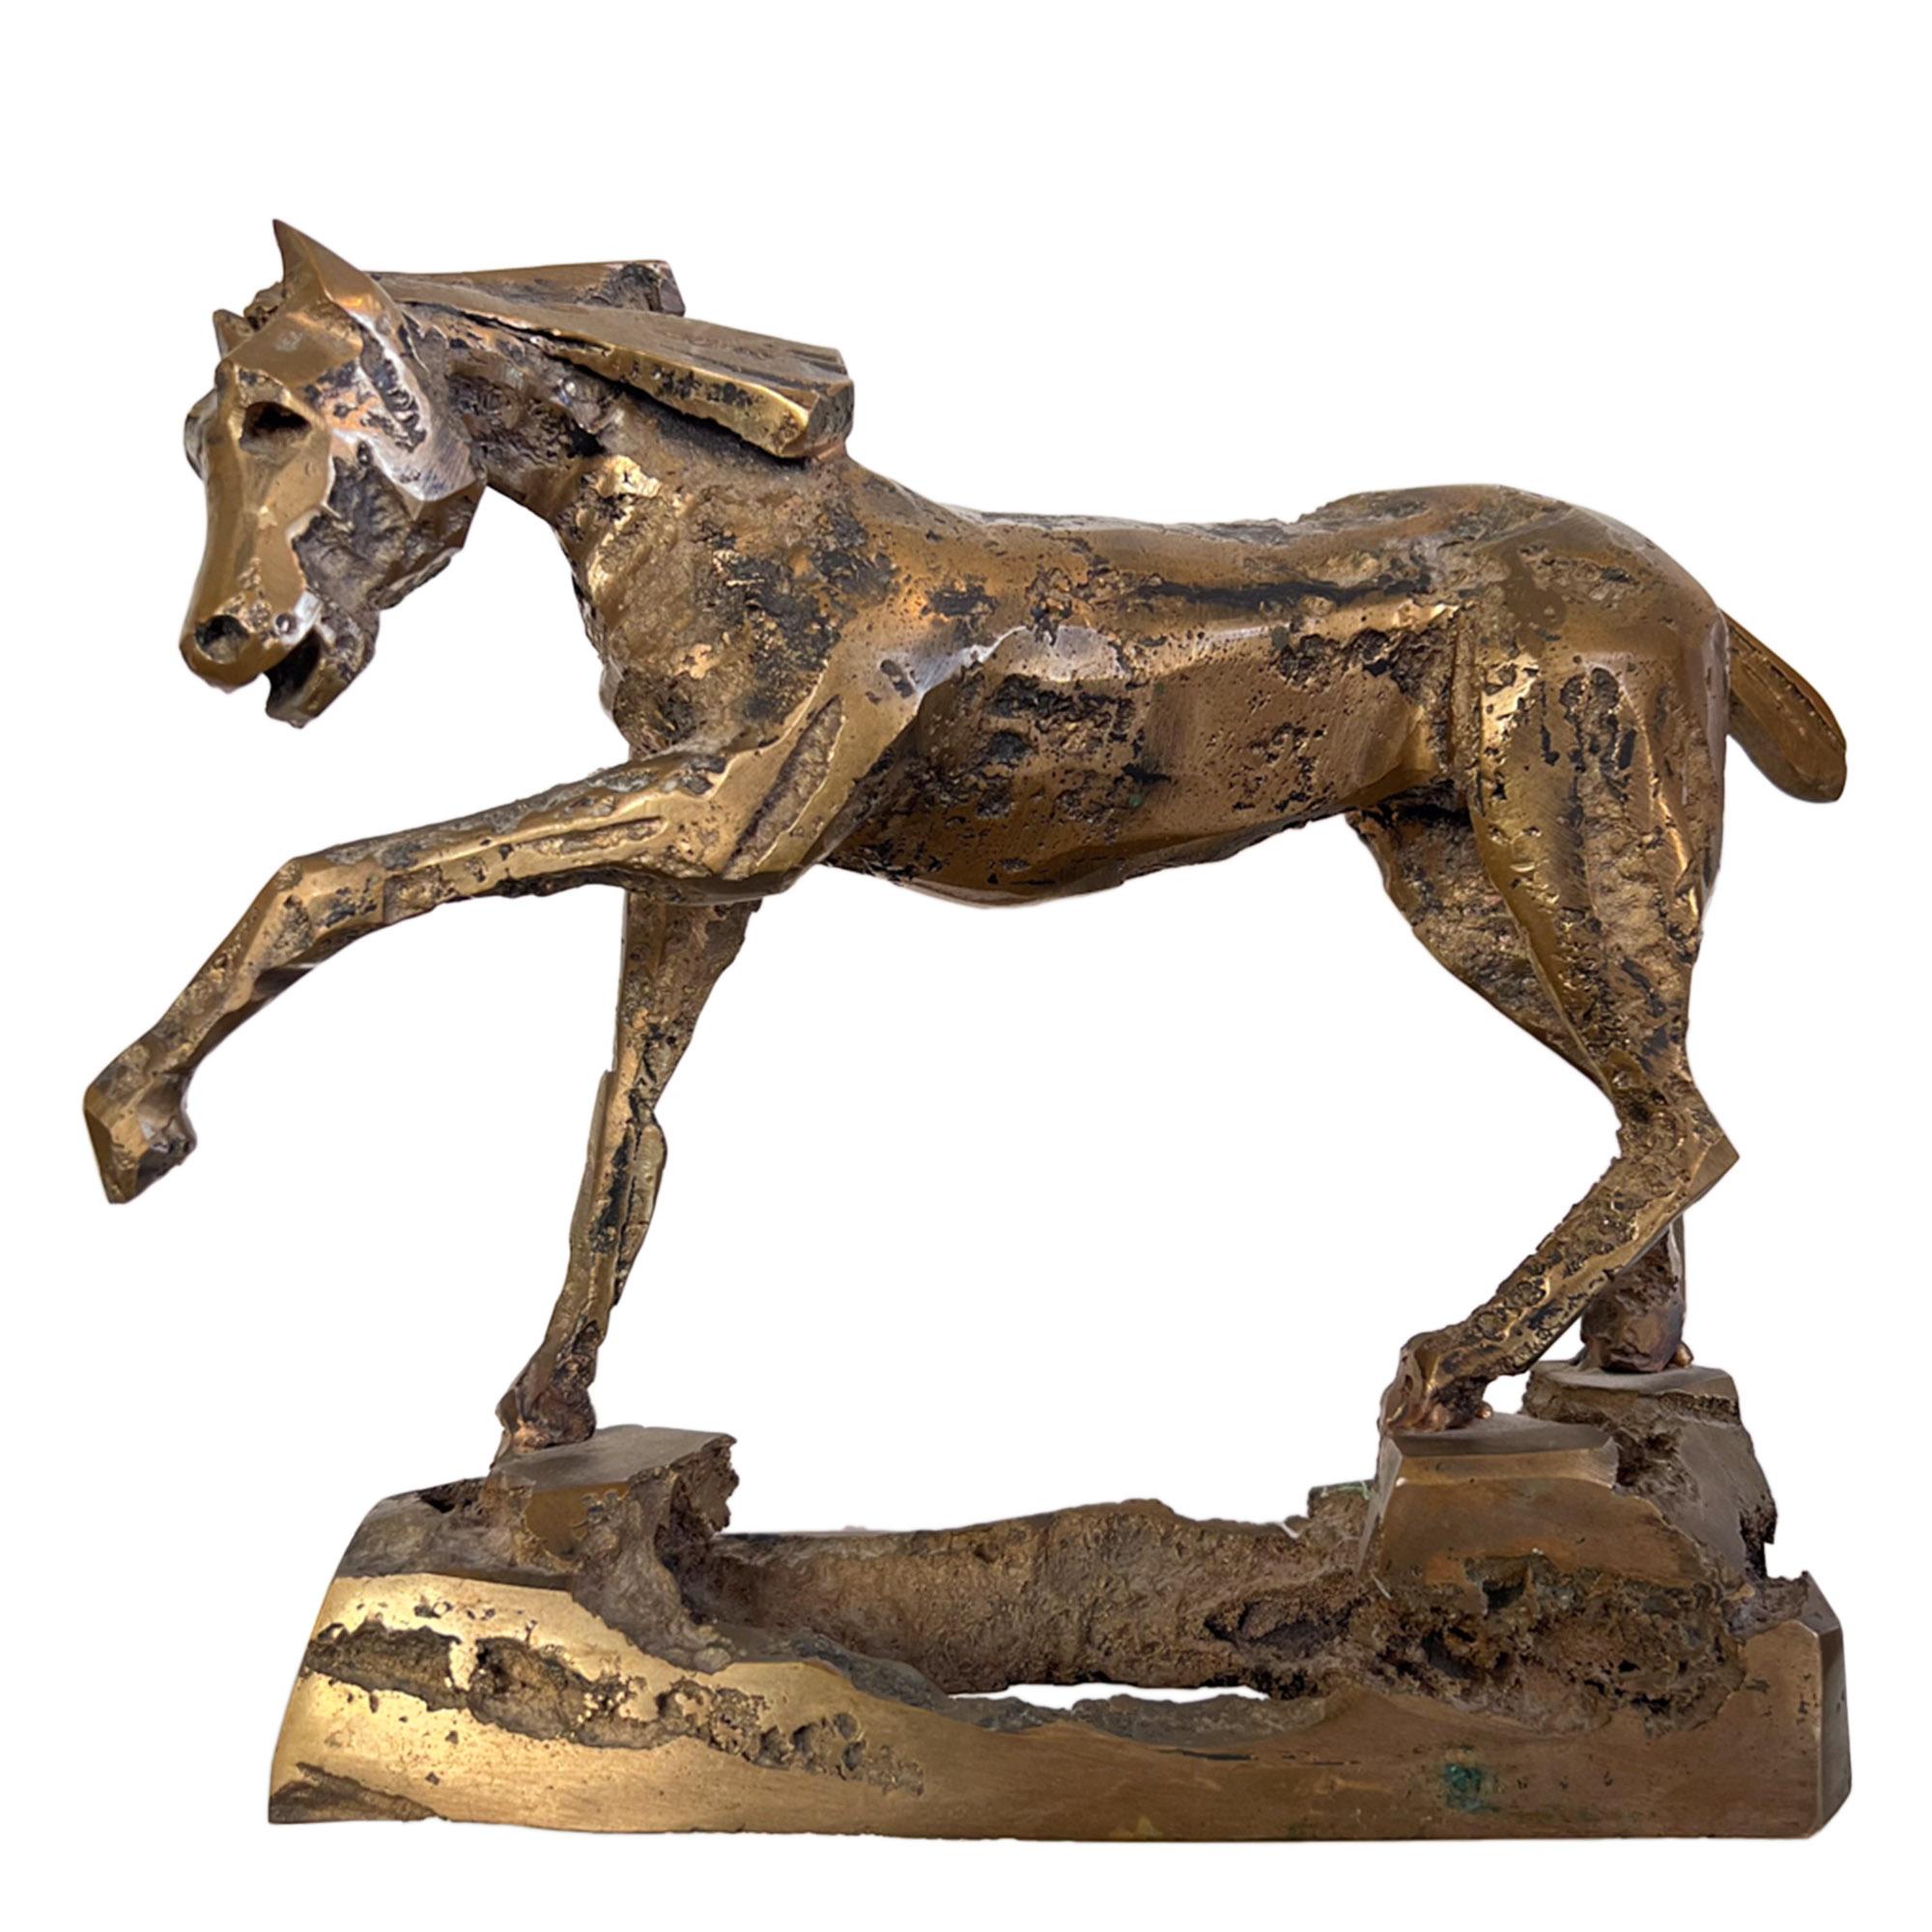 Cette belle sculpture en bronze a été réalisée en France au milieu du XXe siècle. 

Le cheval est debout, la patte avant gauche levée, dans une position naturelle. Ressemblant à la vie et élégante, elle a un léger aspect brutaliste, tout en